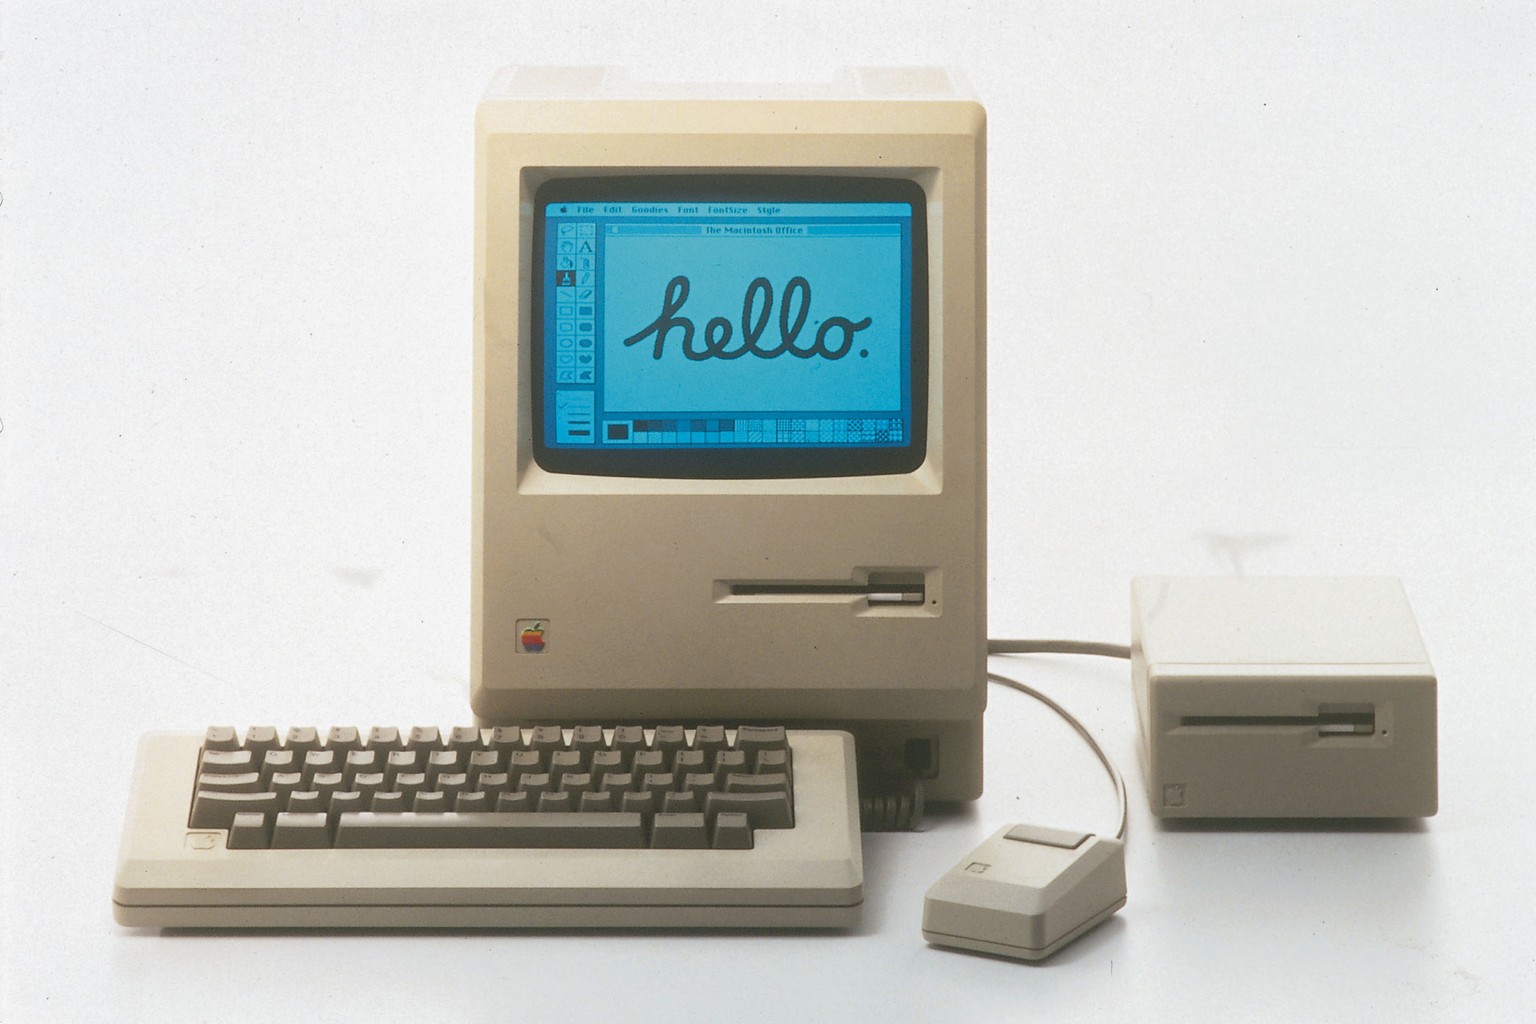 Der erste Mac kostete 2495 US-Dollar – nach heutigem Wert um die 6000 Franken.